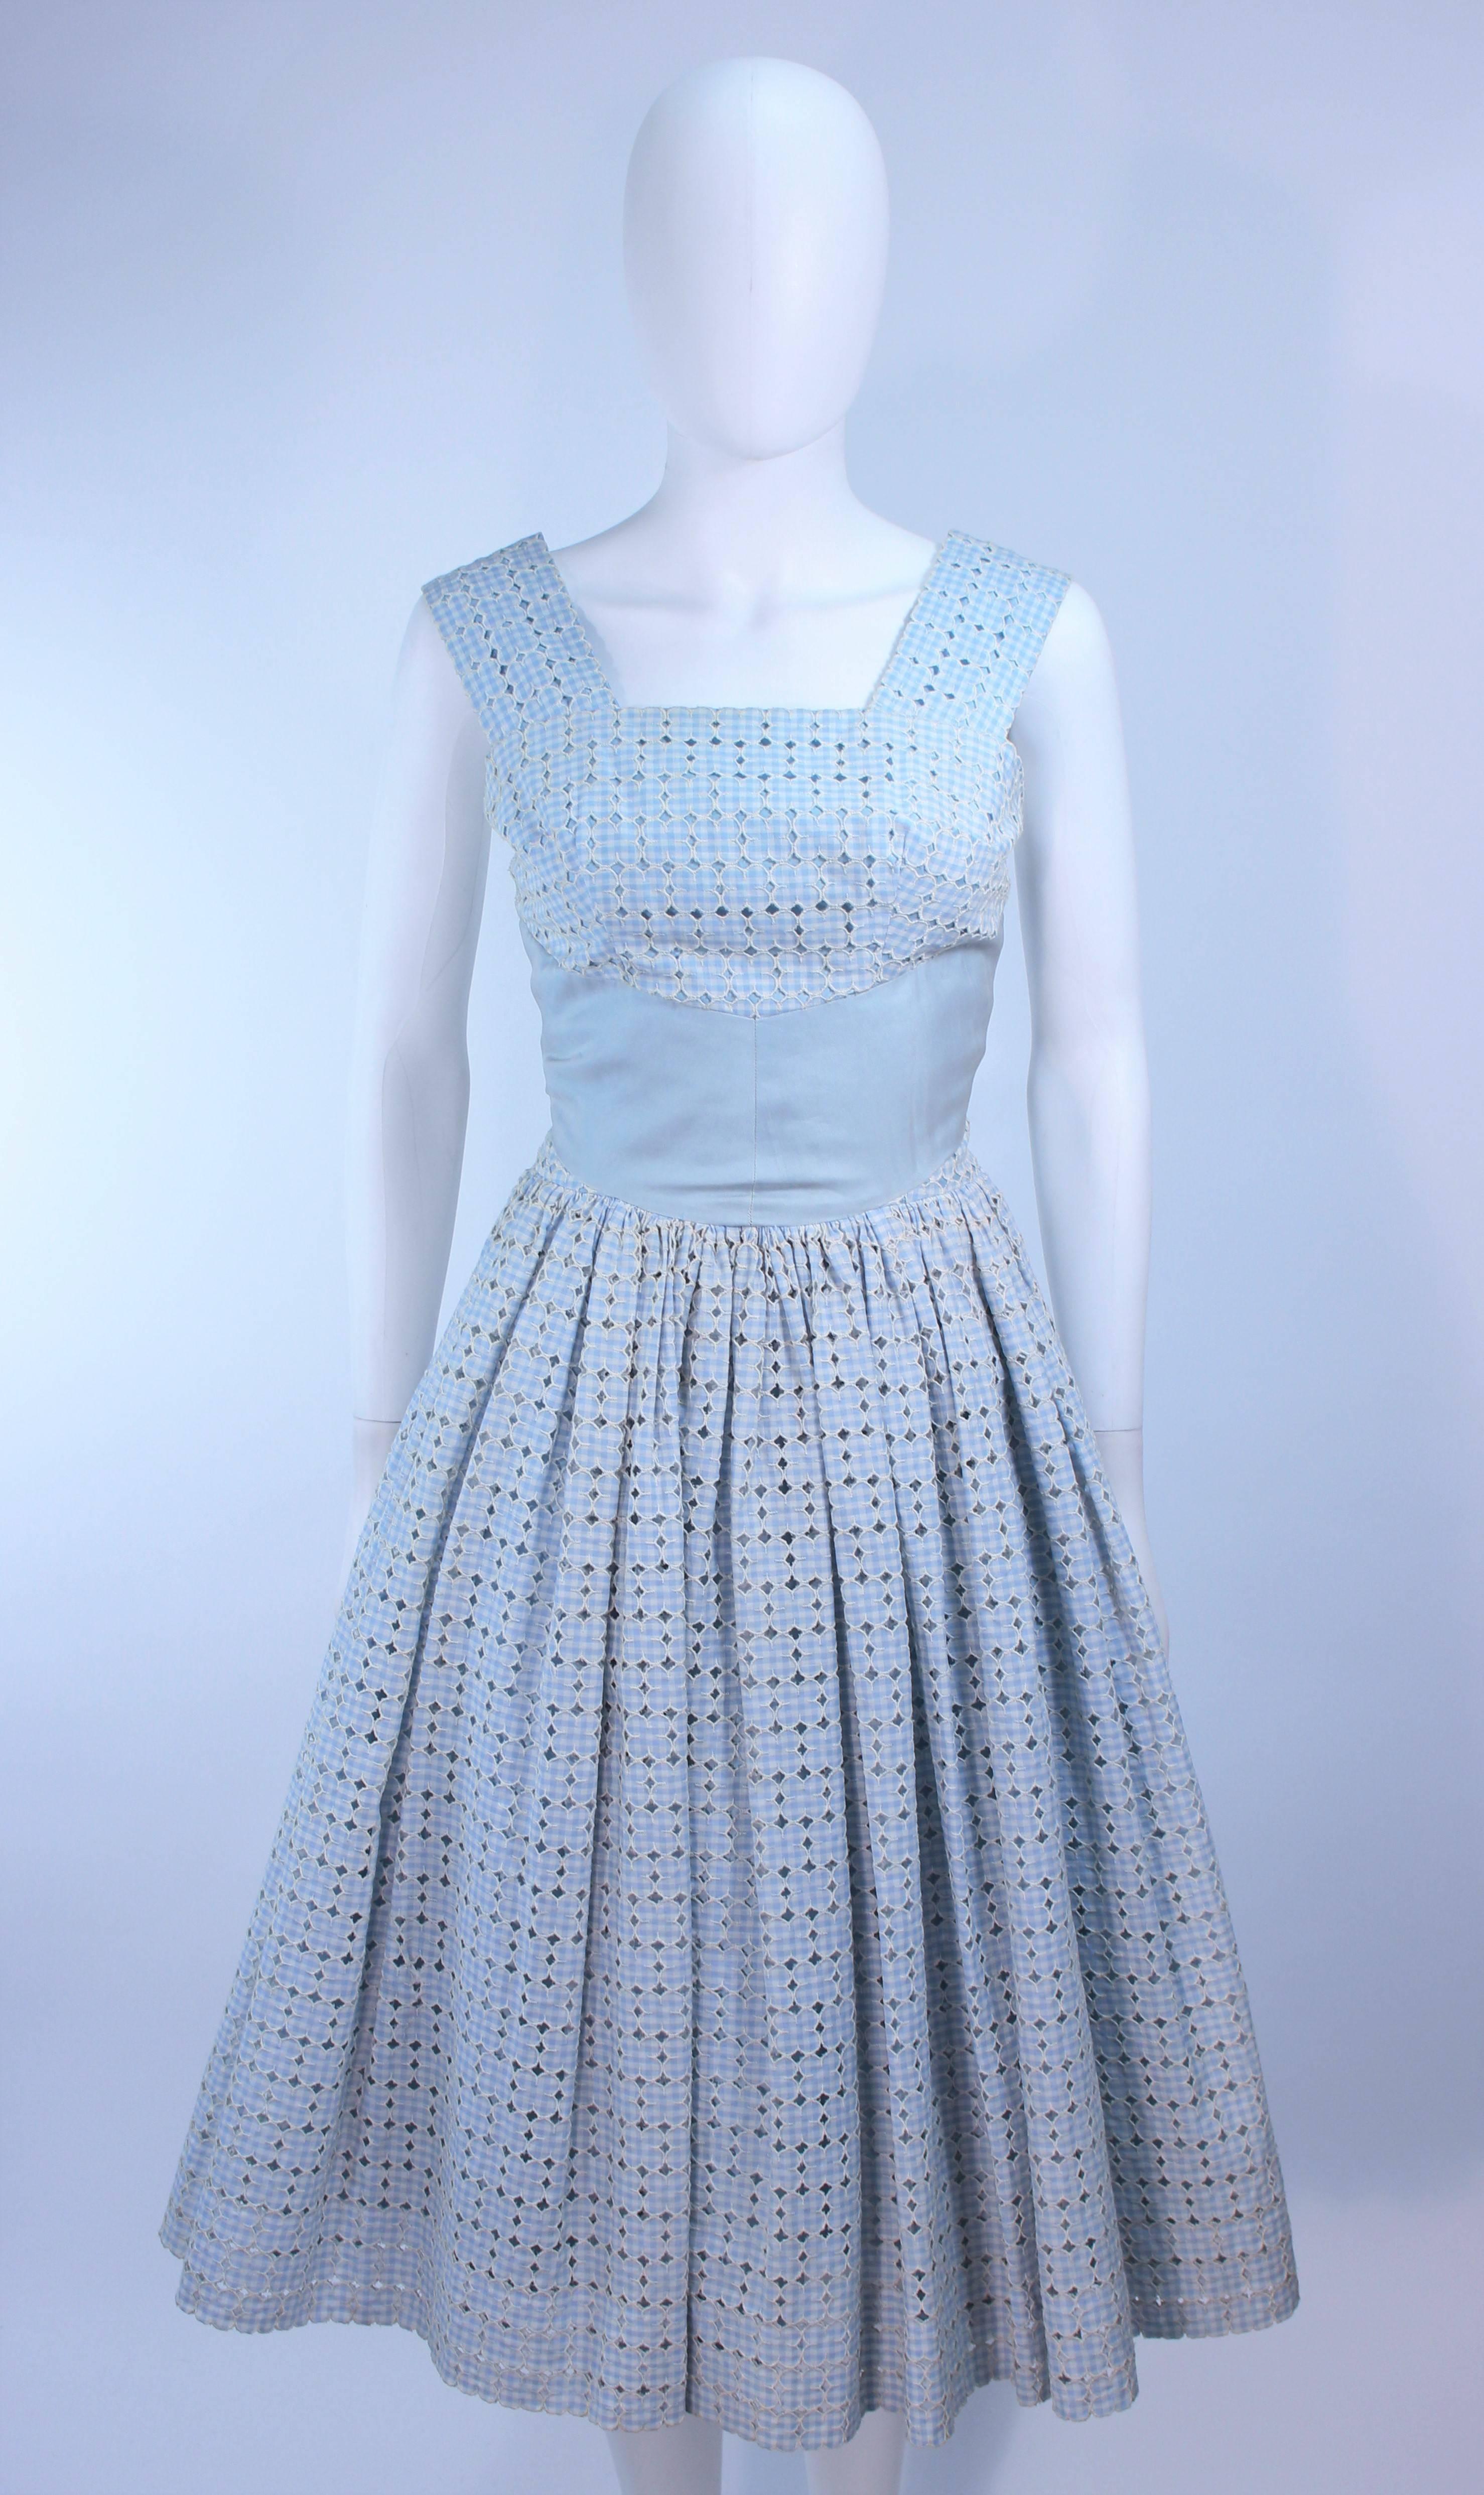 LIGHT BLUE 1950's DRESS cotton eyelet 50's xs S A2